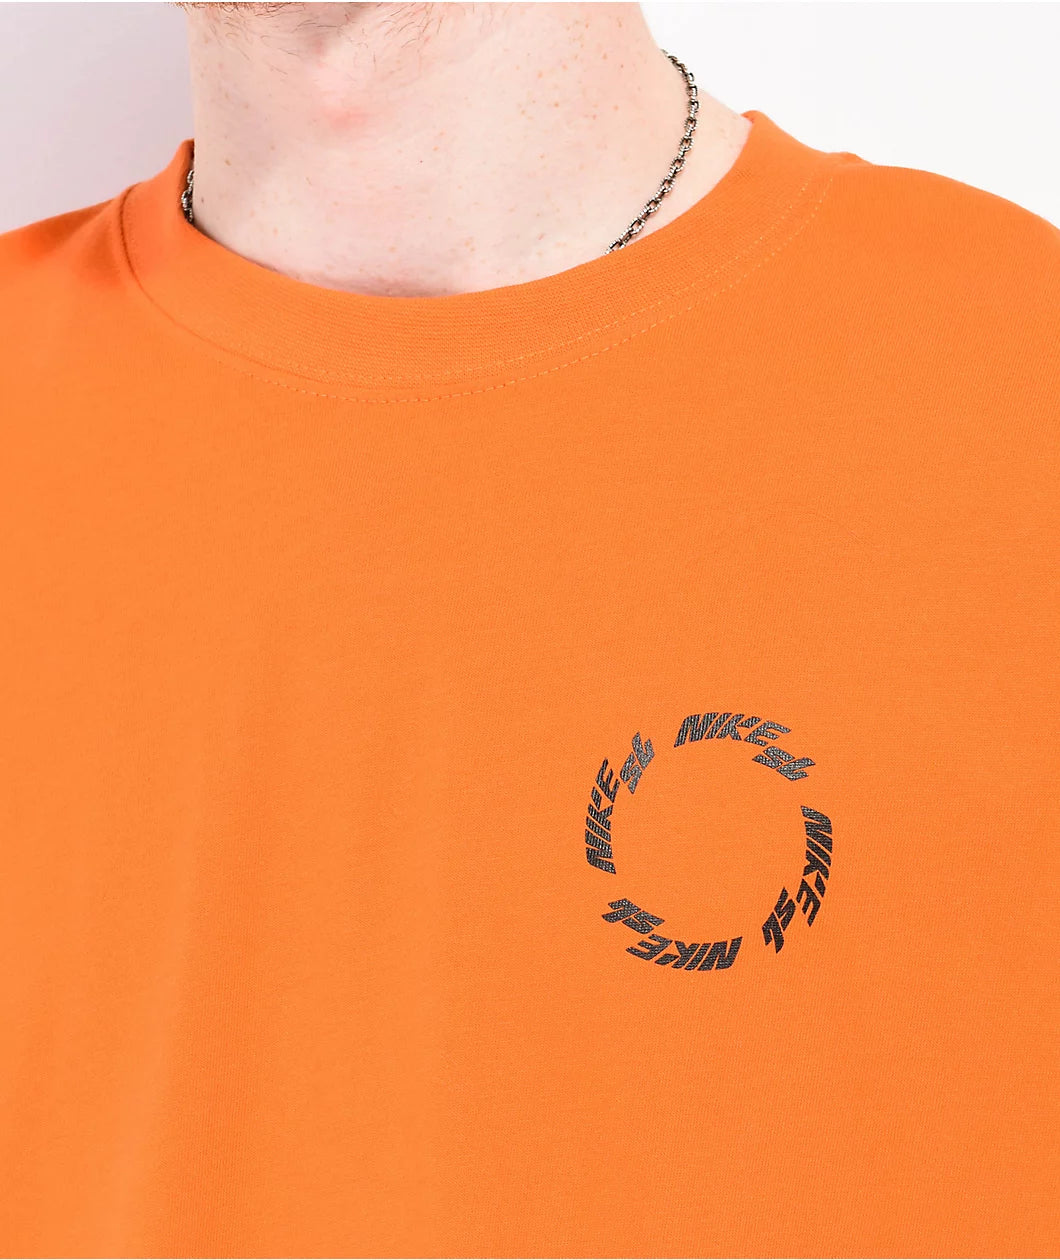 Camisa Nike SB Nike Wheel Orange T-Shirt